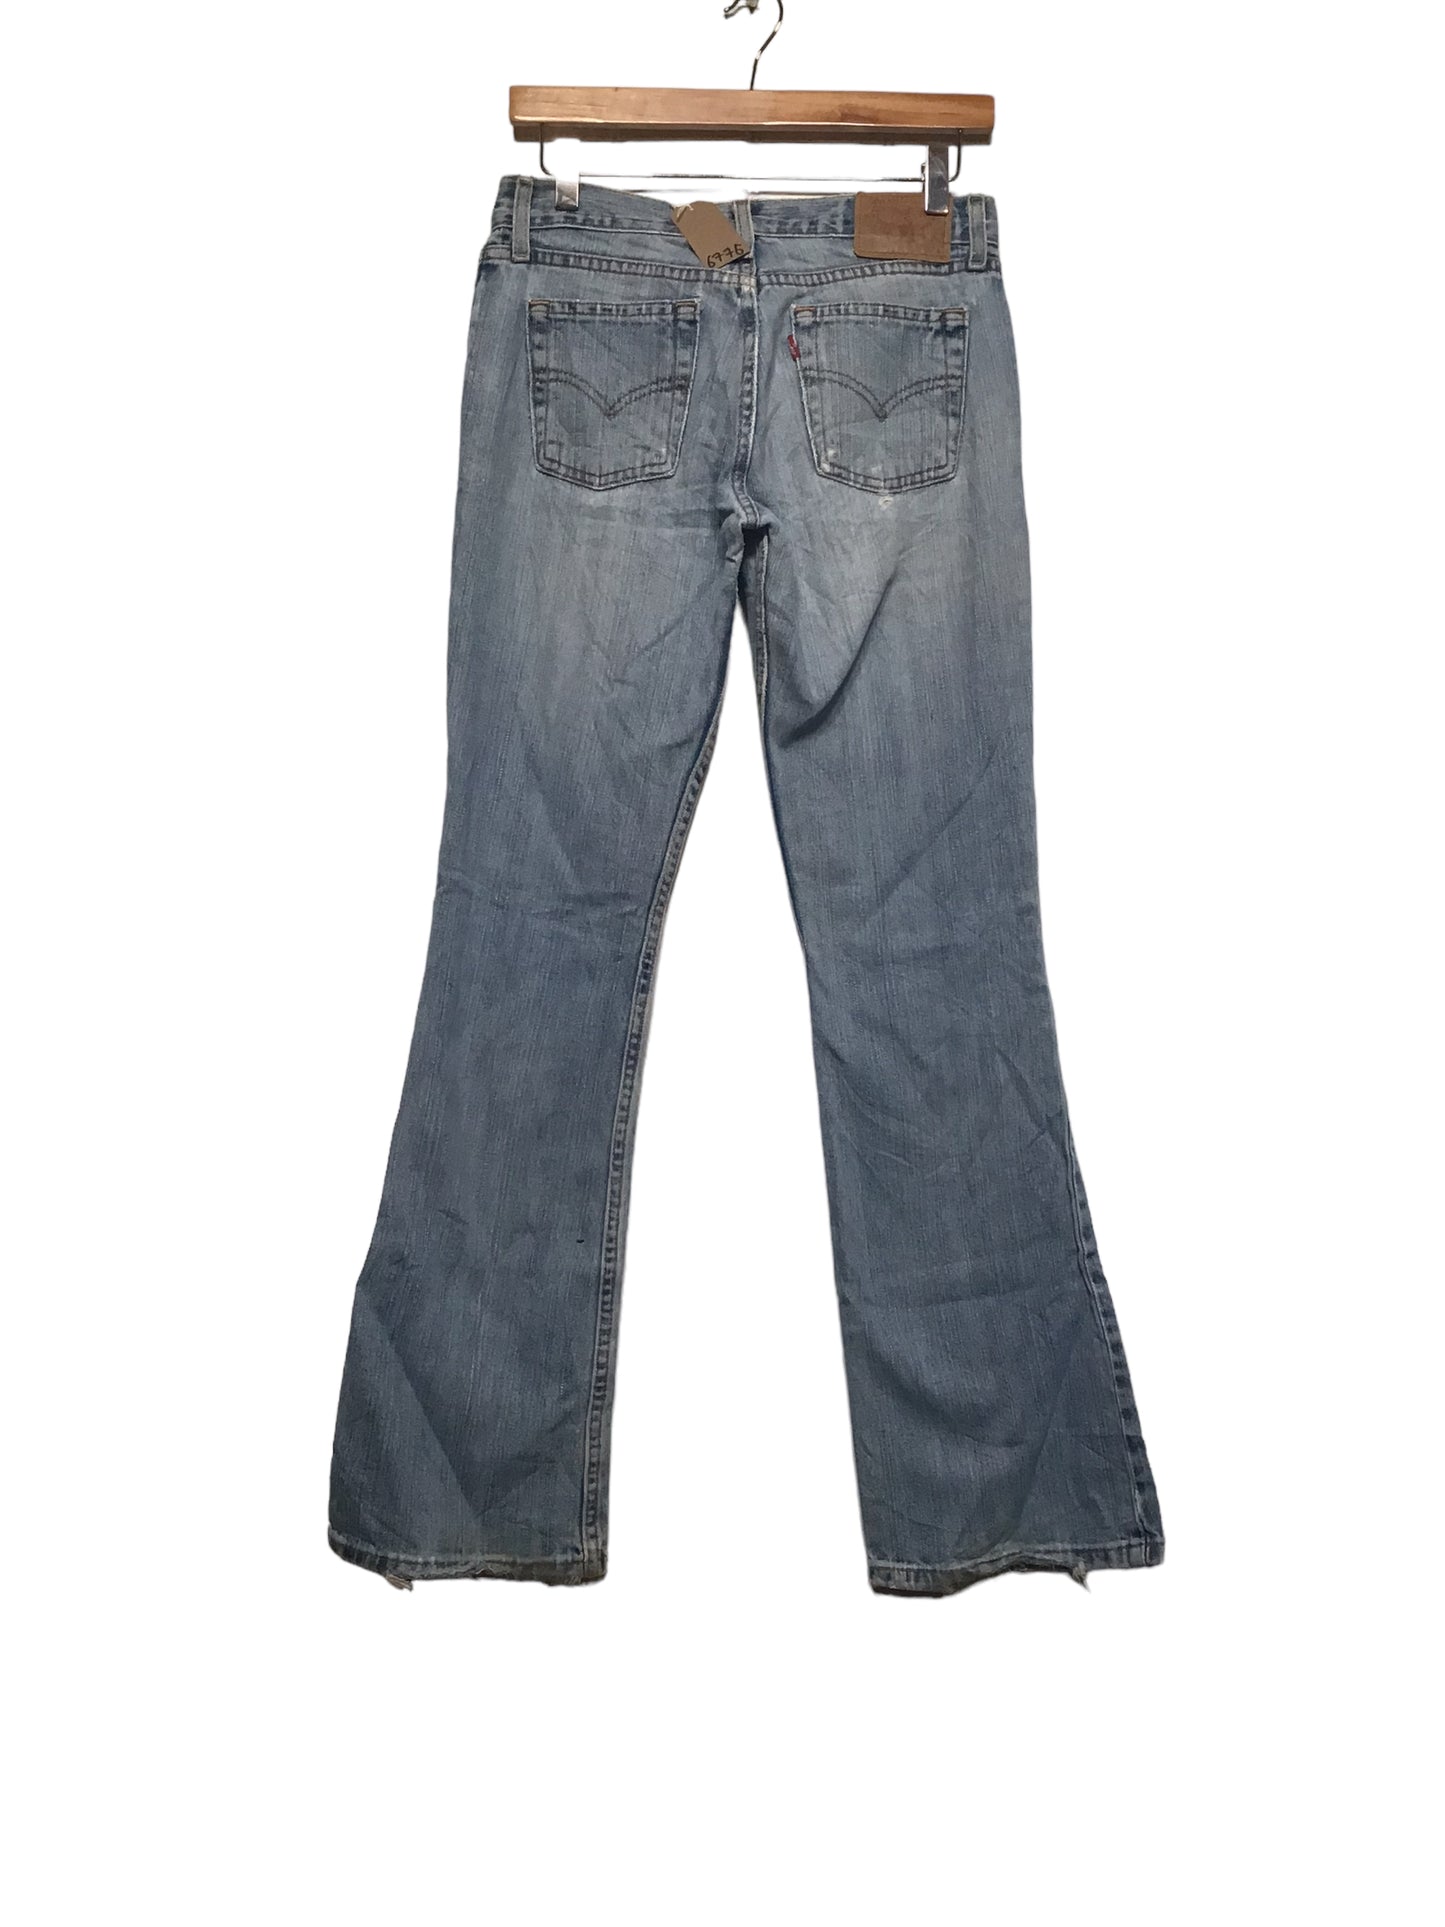 Levi 518 Jeans (30x32)